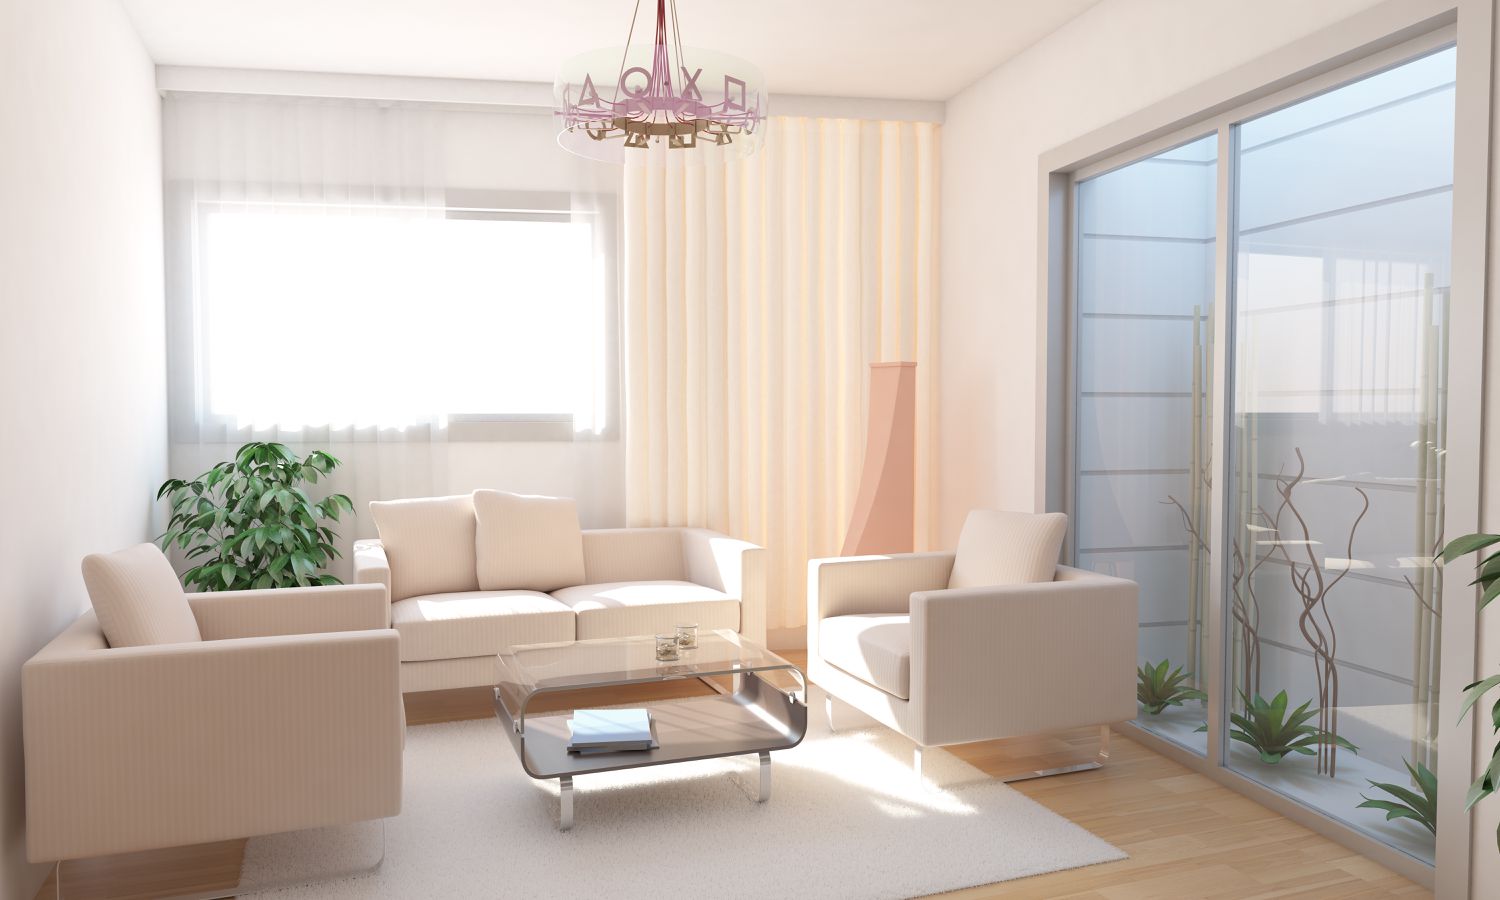 Keller-Wohnzimmer-Inneneinrichtung mit minimalistischem Landschaftsdesign